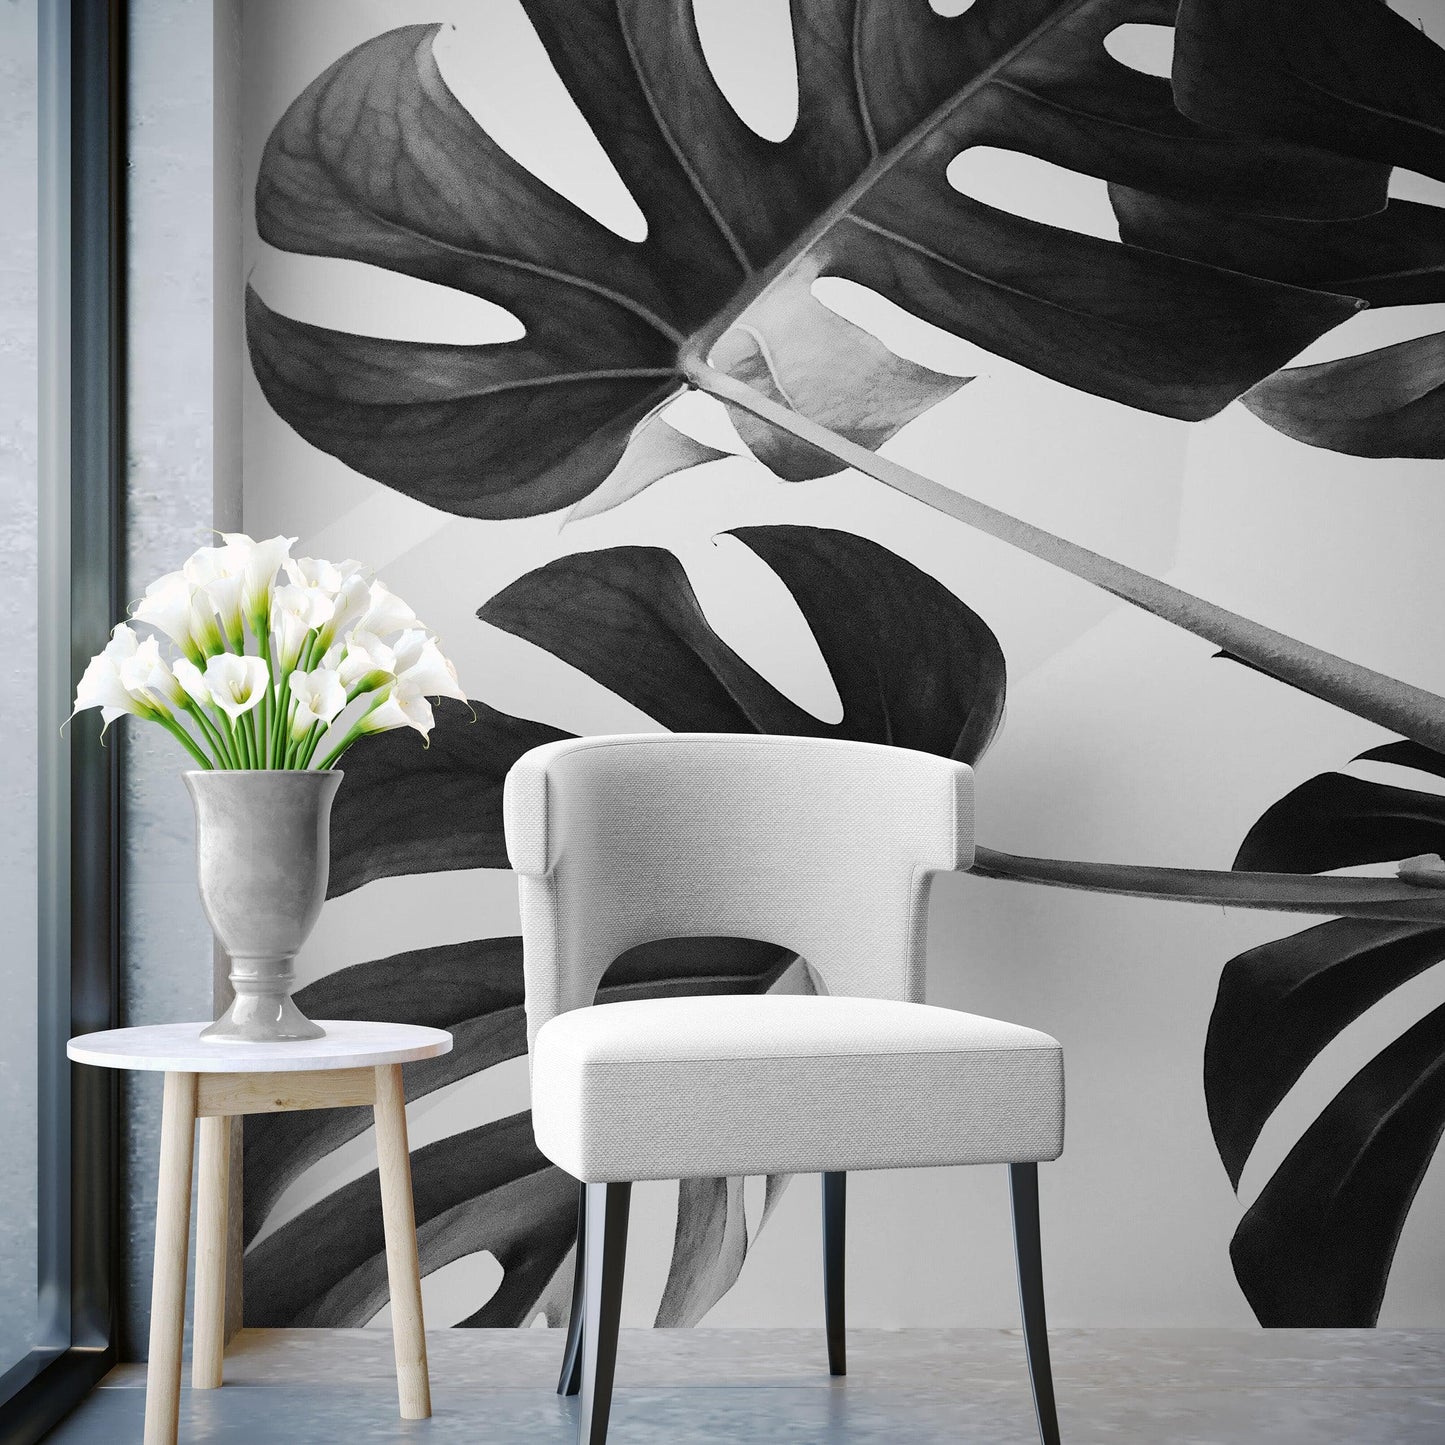 Elegant Black and White Leaves Wallpaper Mural - Serene Botanical Beauty #6606